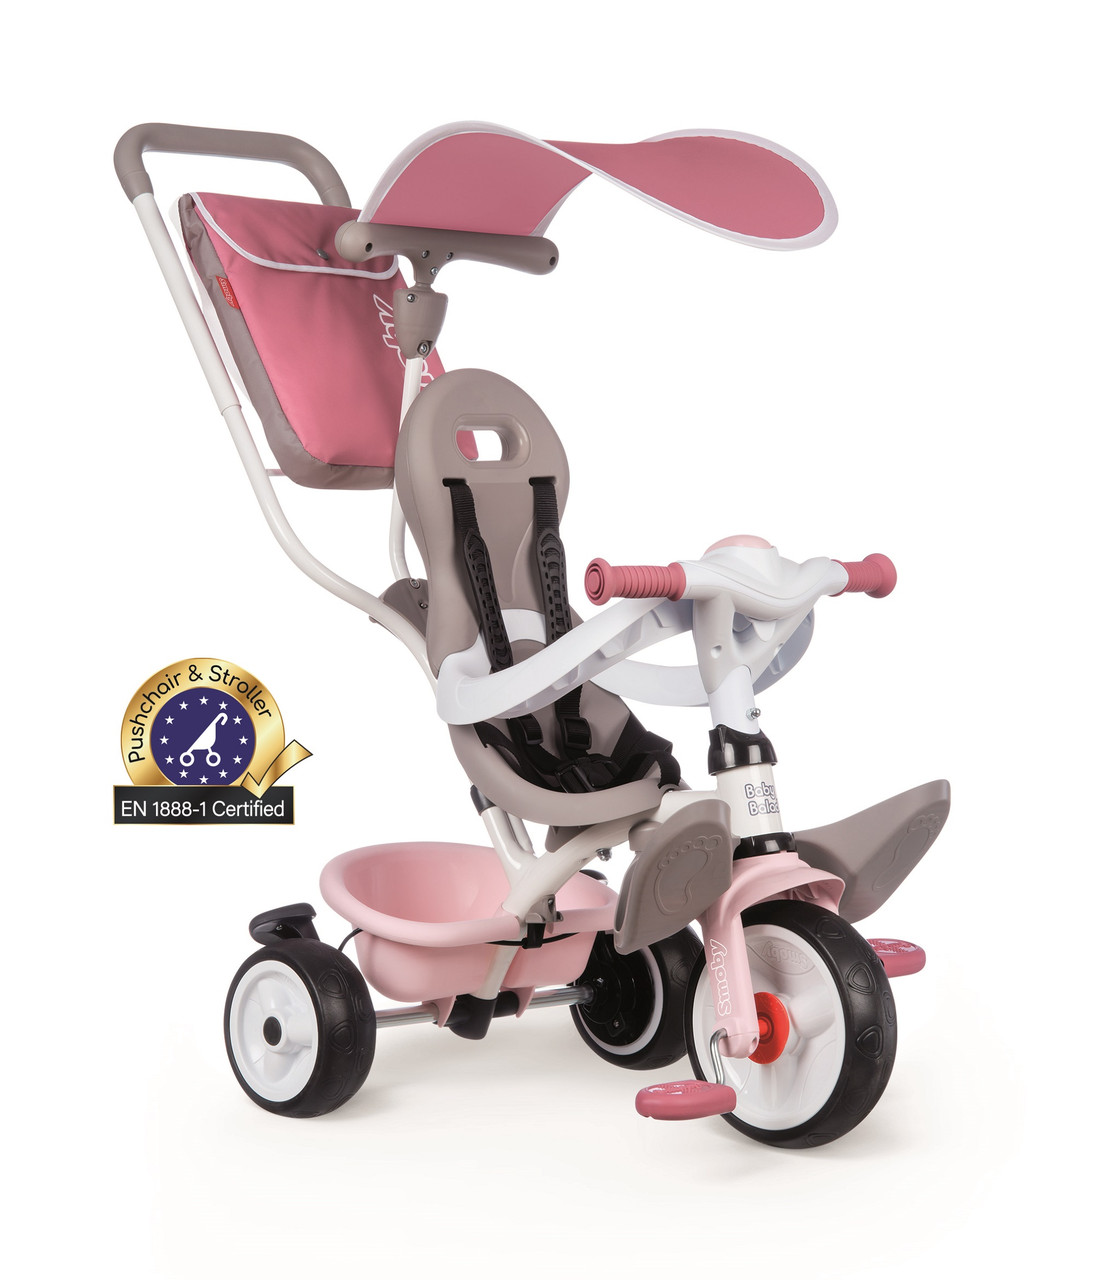 Дитячий велосипед Smoby Toys металевий з козирком багажником і сумкою Рожево-сірий (741401)